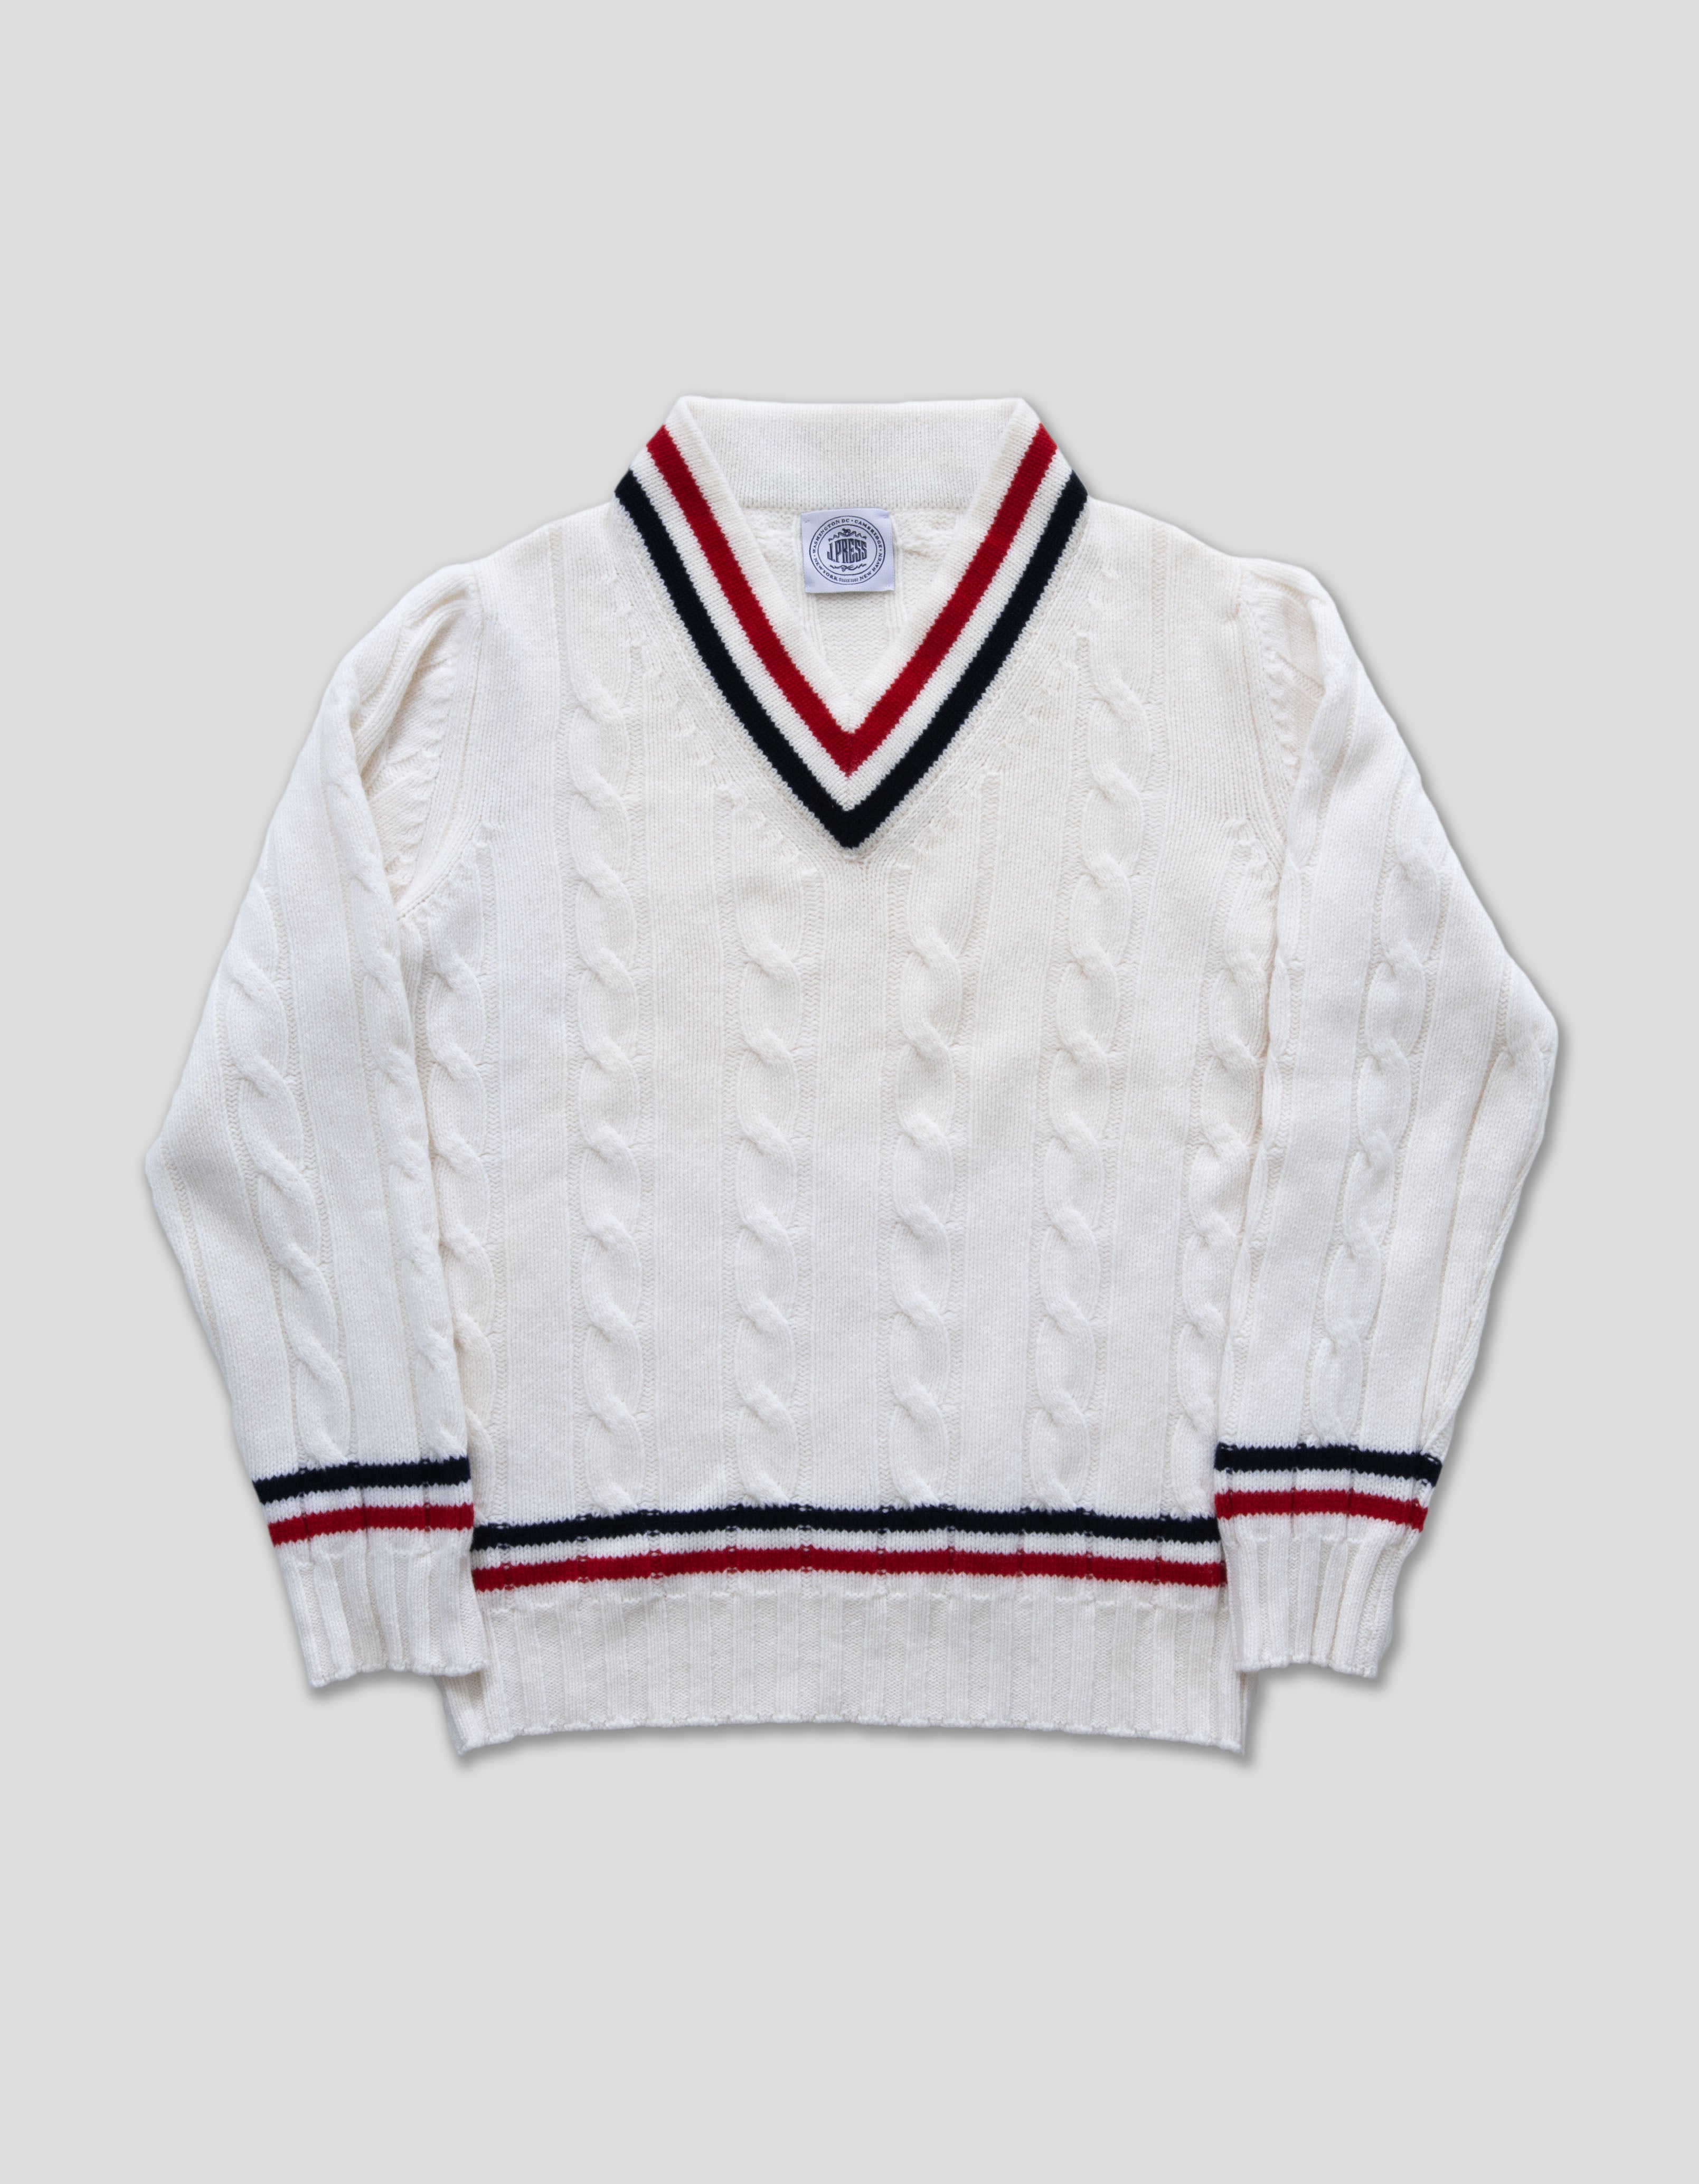 Men's Wool Tennis Sweater - White | Men's Sweaters - J. Press Sweater ...